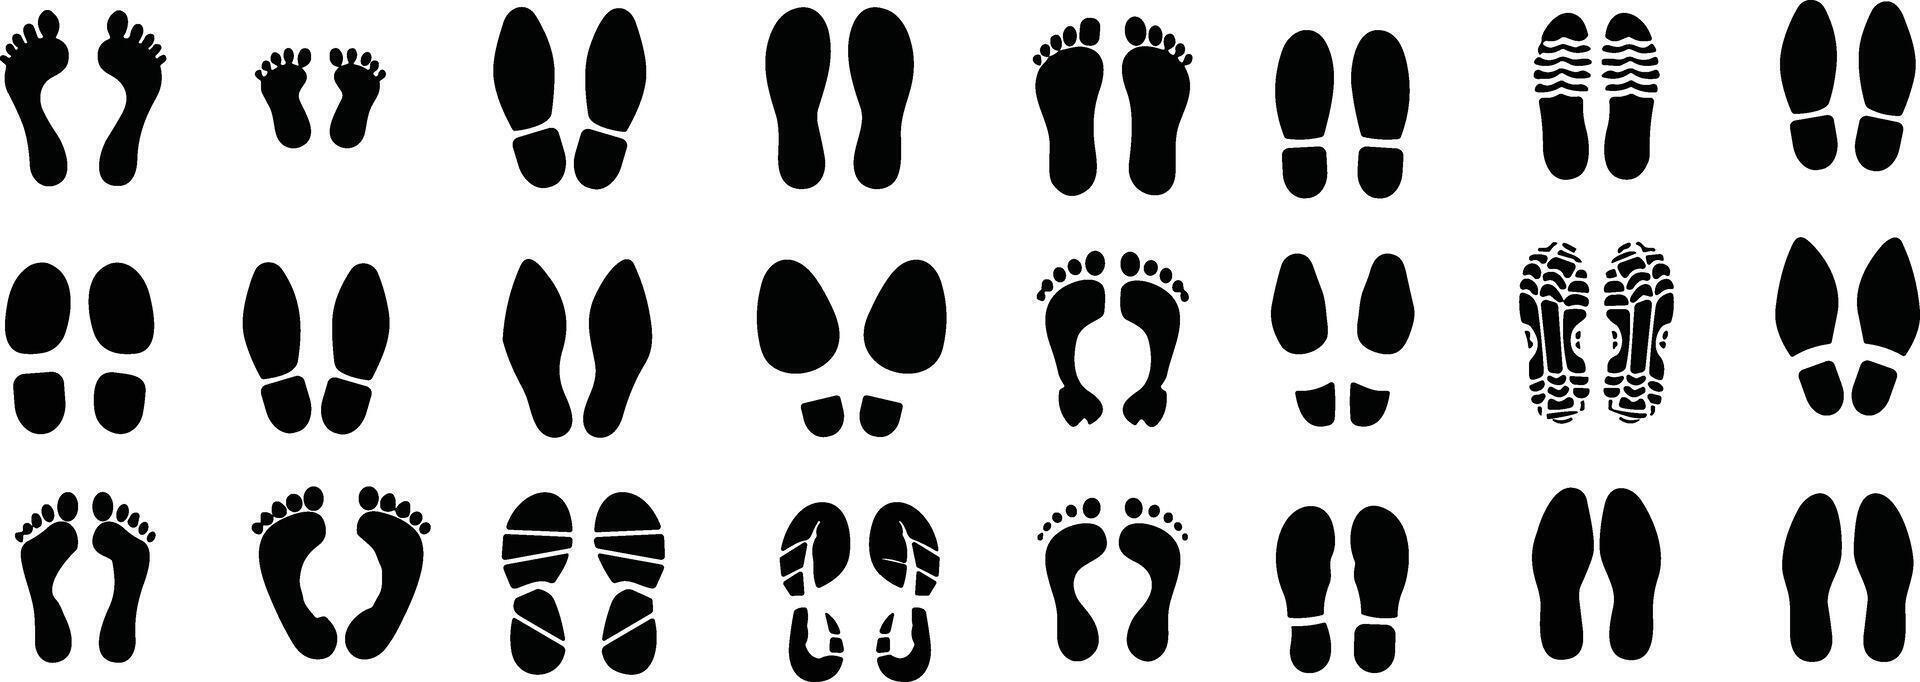 Fußabdrücke Mensch Silhouette Vektor Satz. Schuh Sohle, einzig, alleinig drucken Sammlung. Fuß drucken treten, Stiefel, Turnschuhe. Eindruck Symbol barfuß Schritte weiblich, Mann und Kinder.